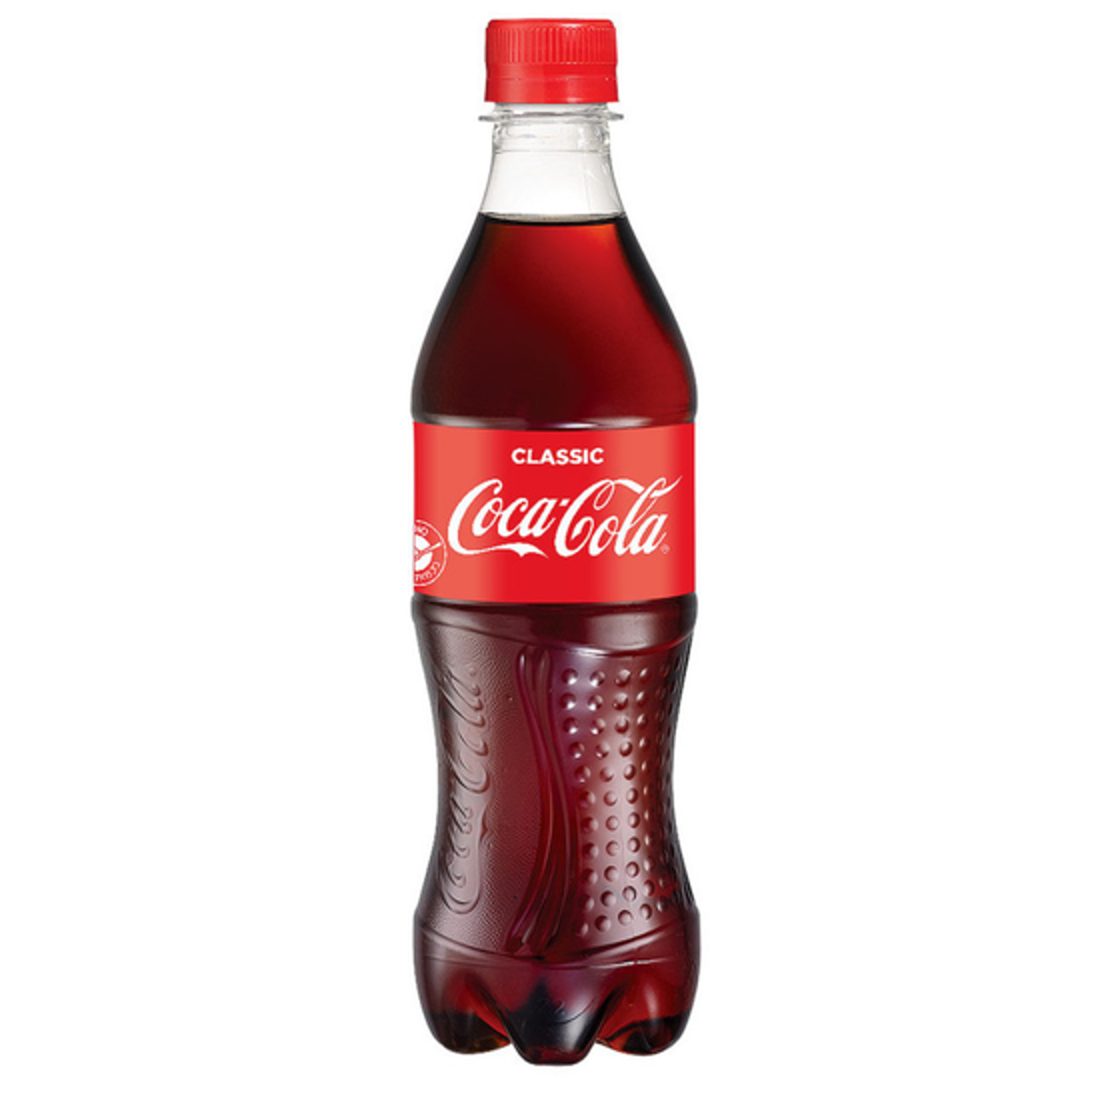 קוקה קולה 500 מ